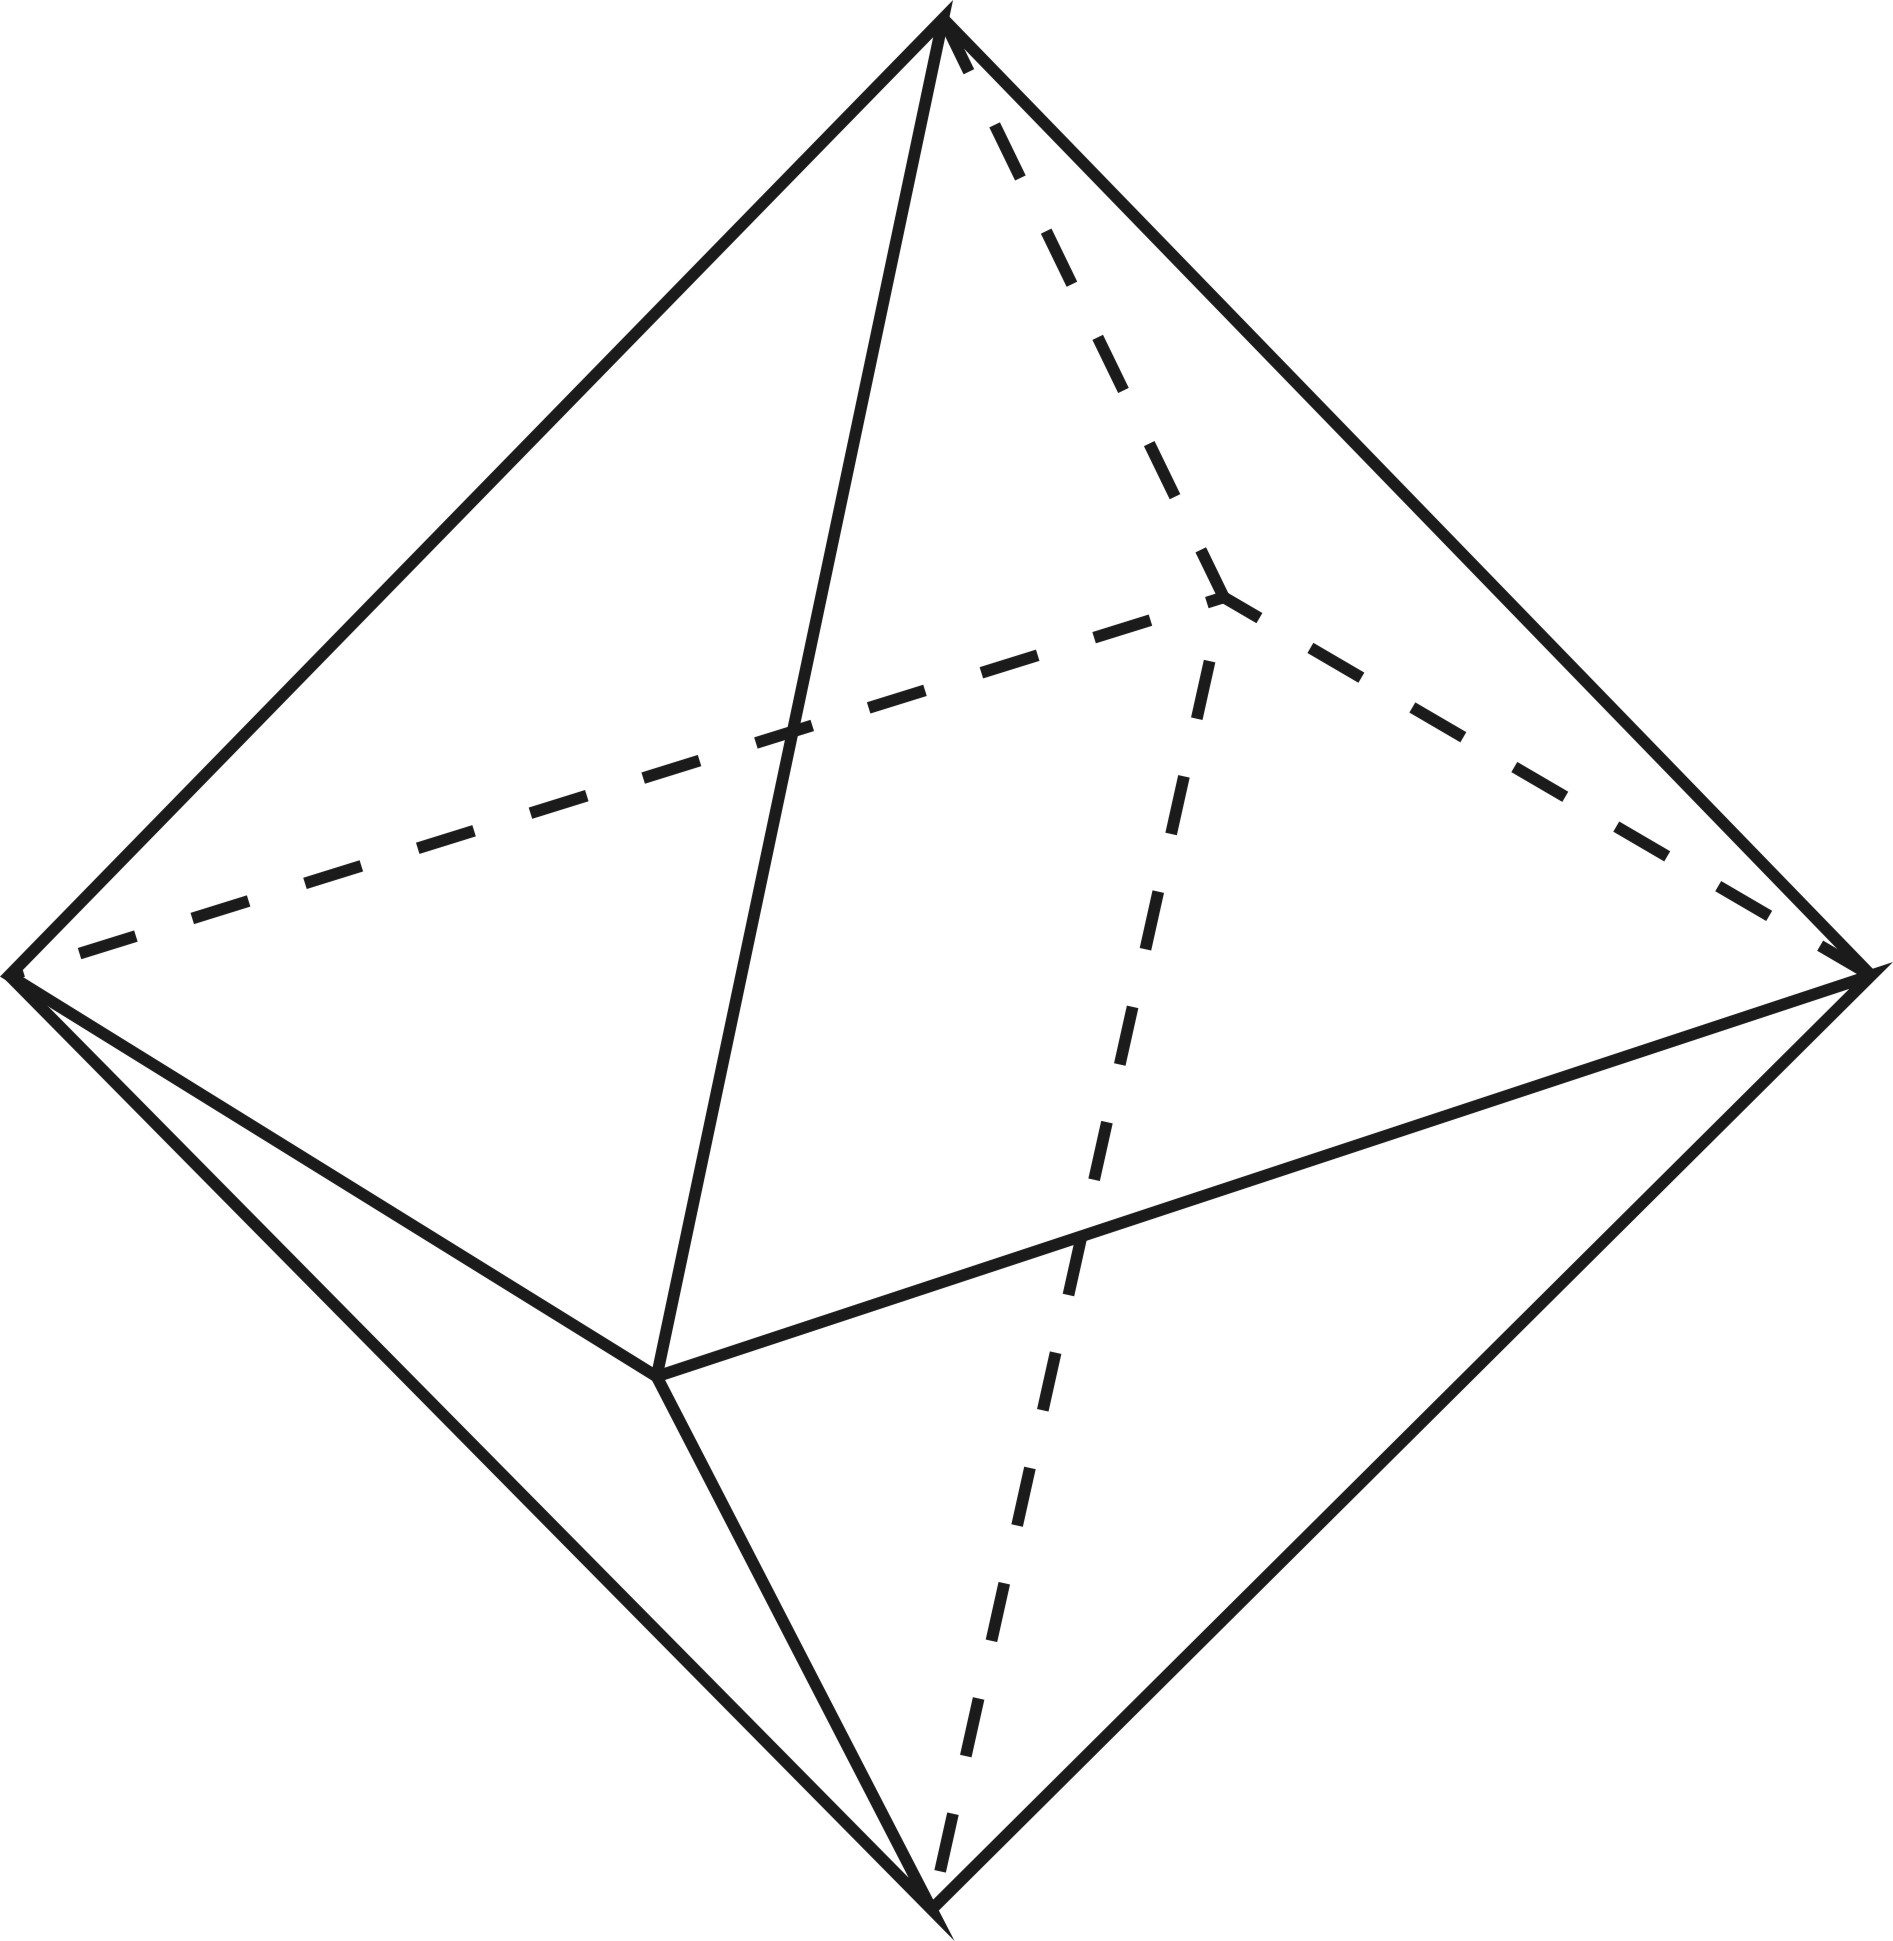 Грани правильного октаэдра. Правильные многогранники октаэдр. Тригональная бипирамида. Четырехугольная бипирамида. Ромбическая бипирамида.